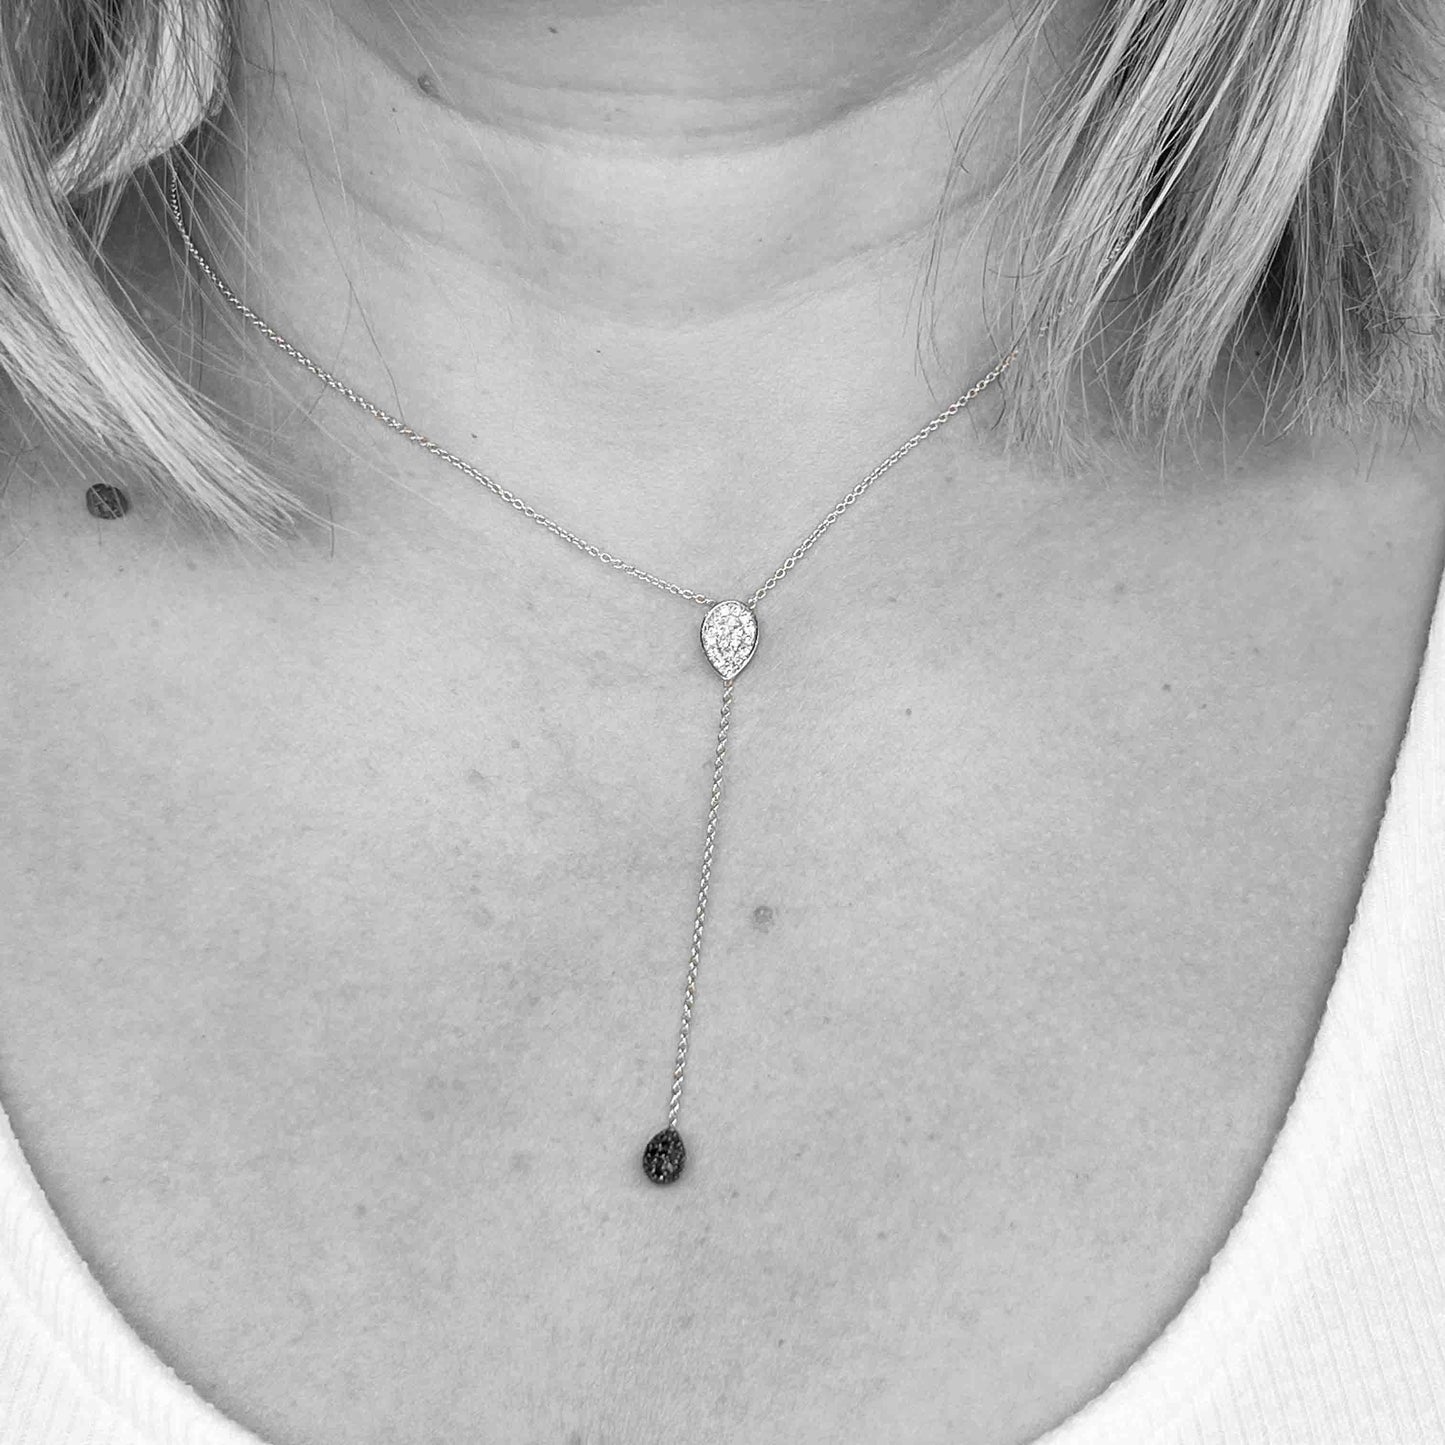 18kw Diamond Lariat Necklace